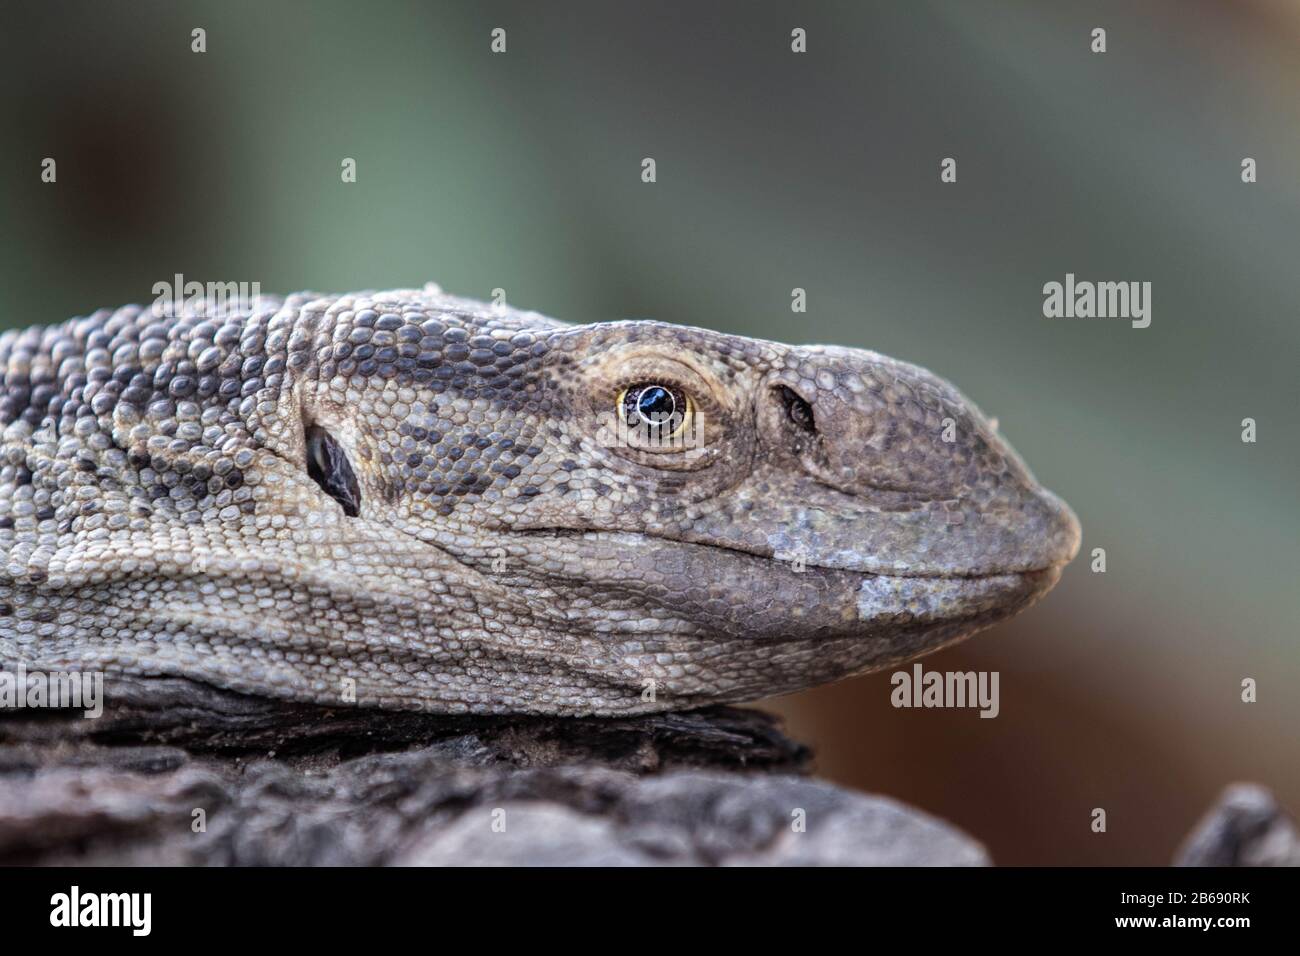 La testa di un monitor lizard, Varanus niloticus, profilo laterale Foto Stock